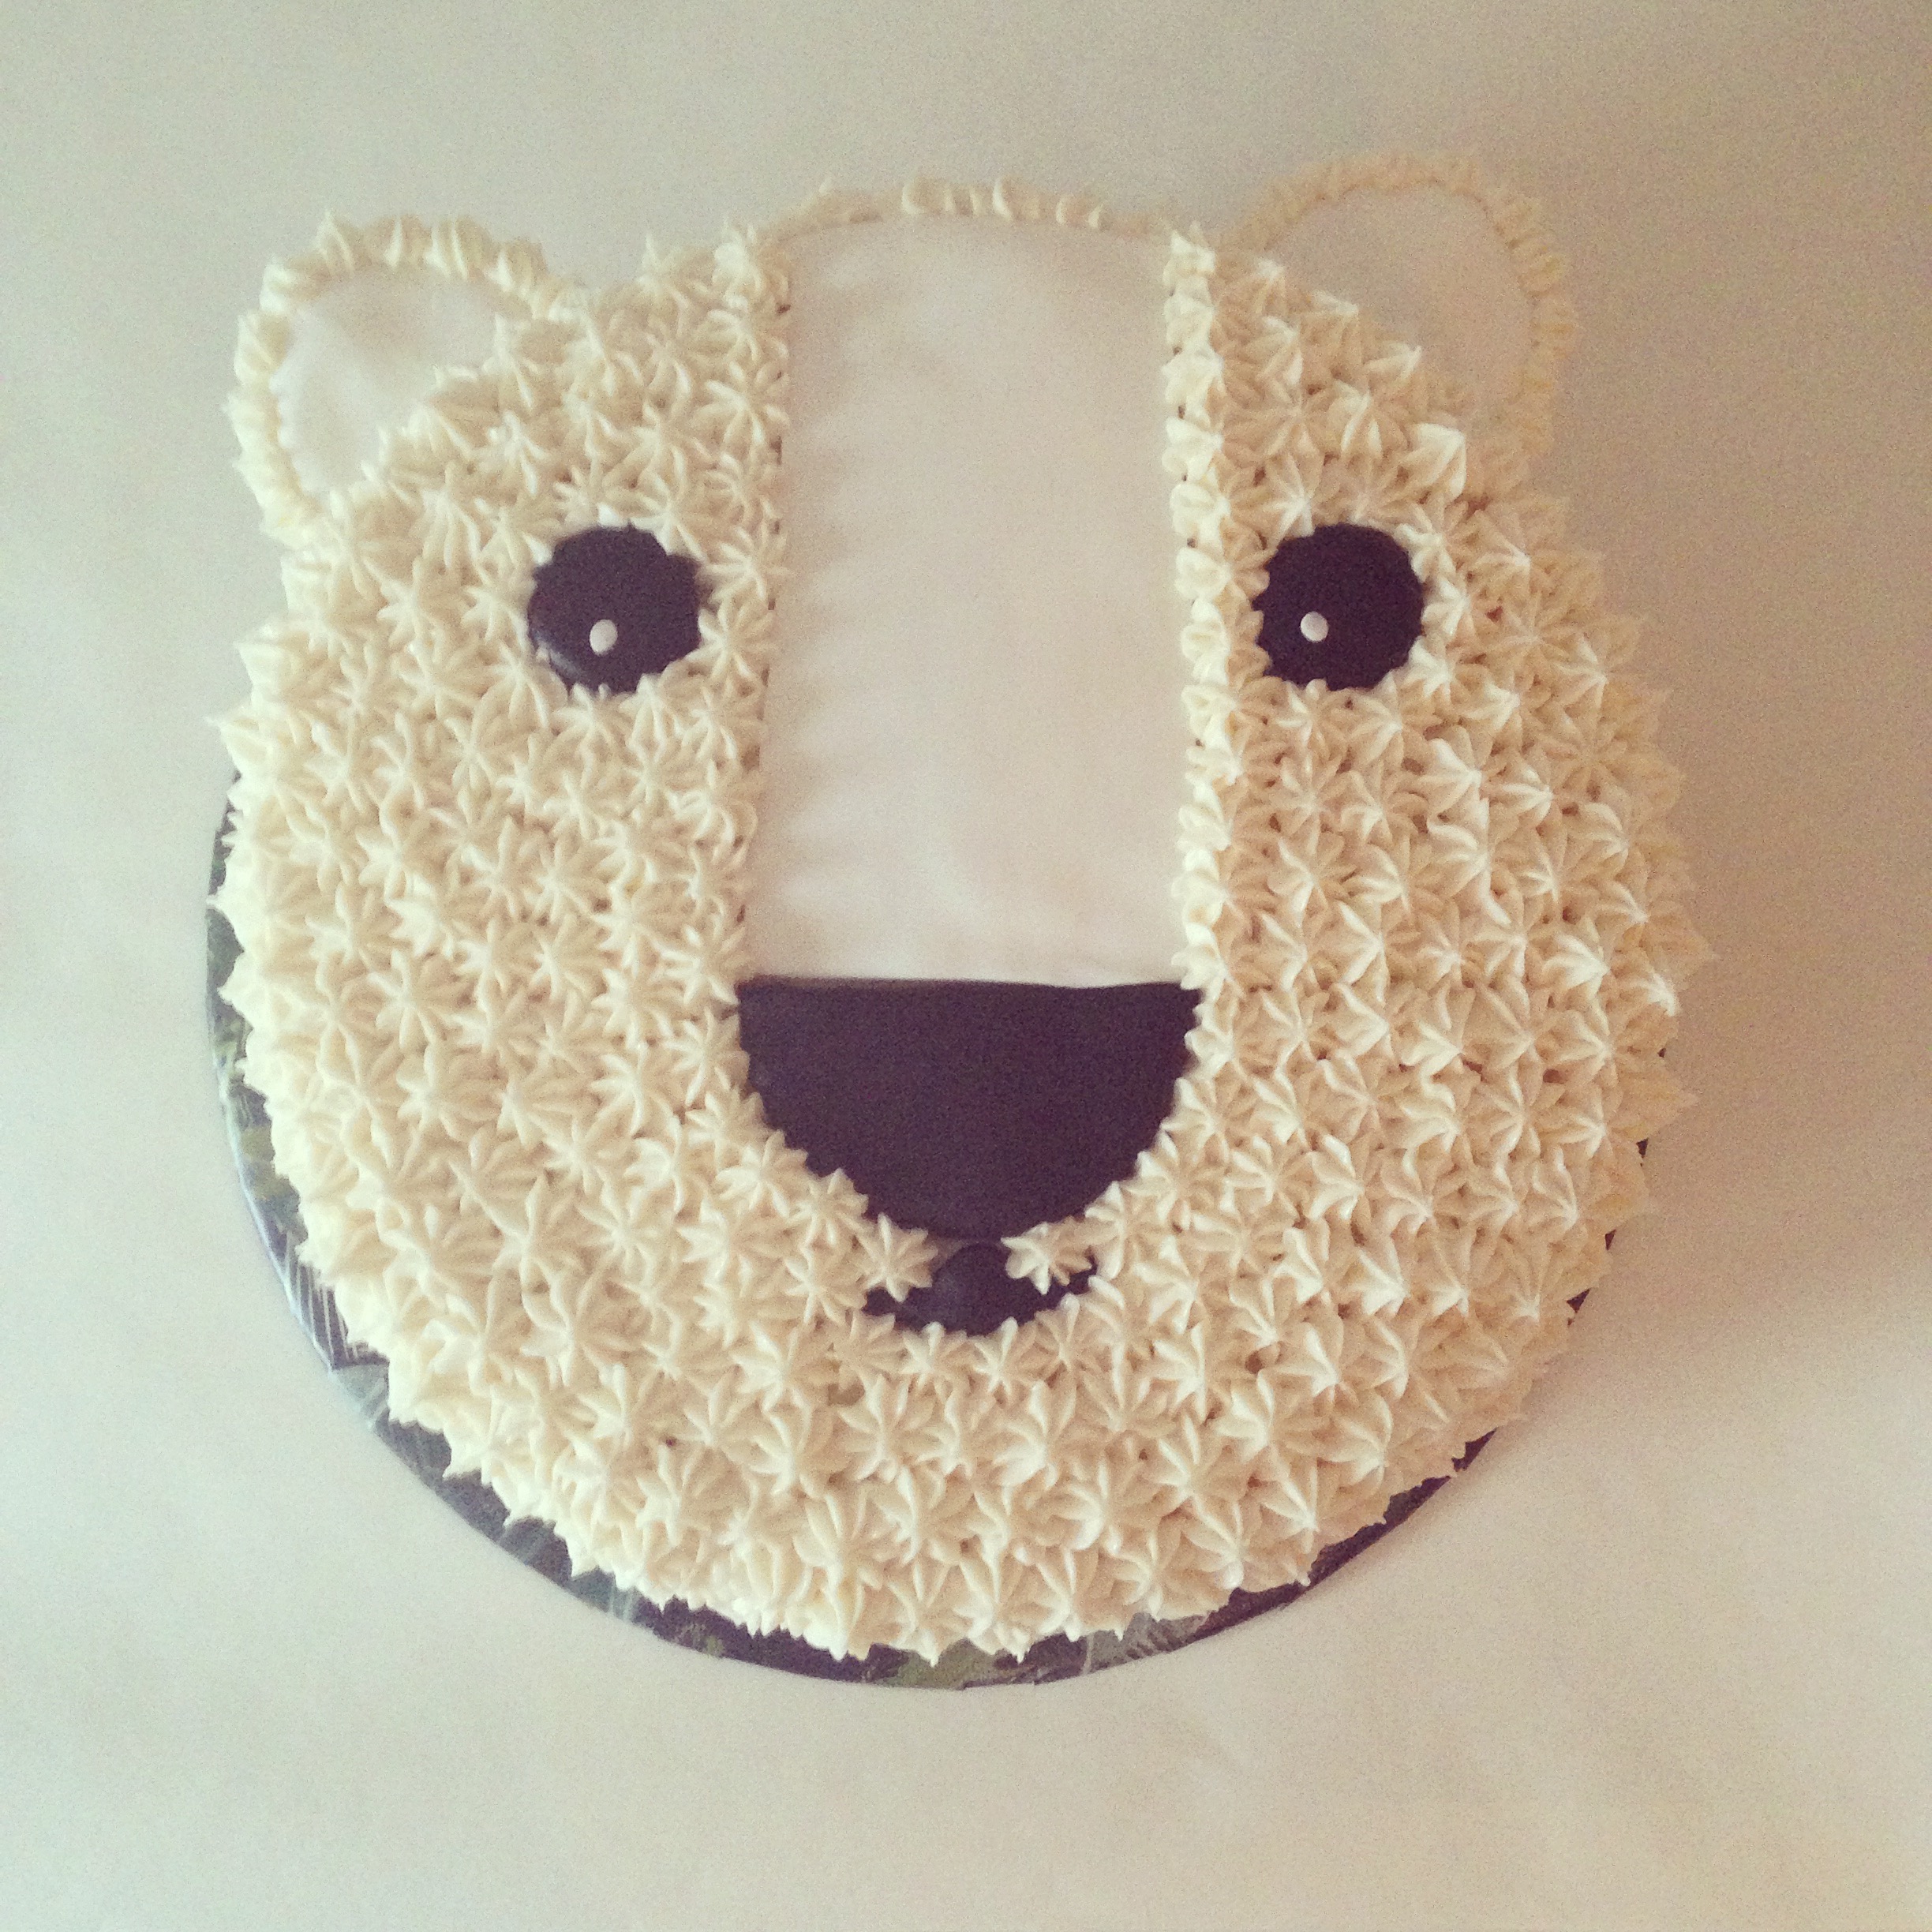 hibernators cakes - polar bear cake